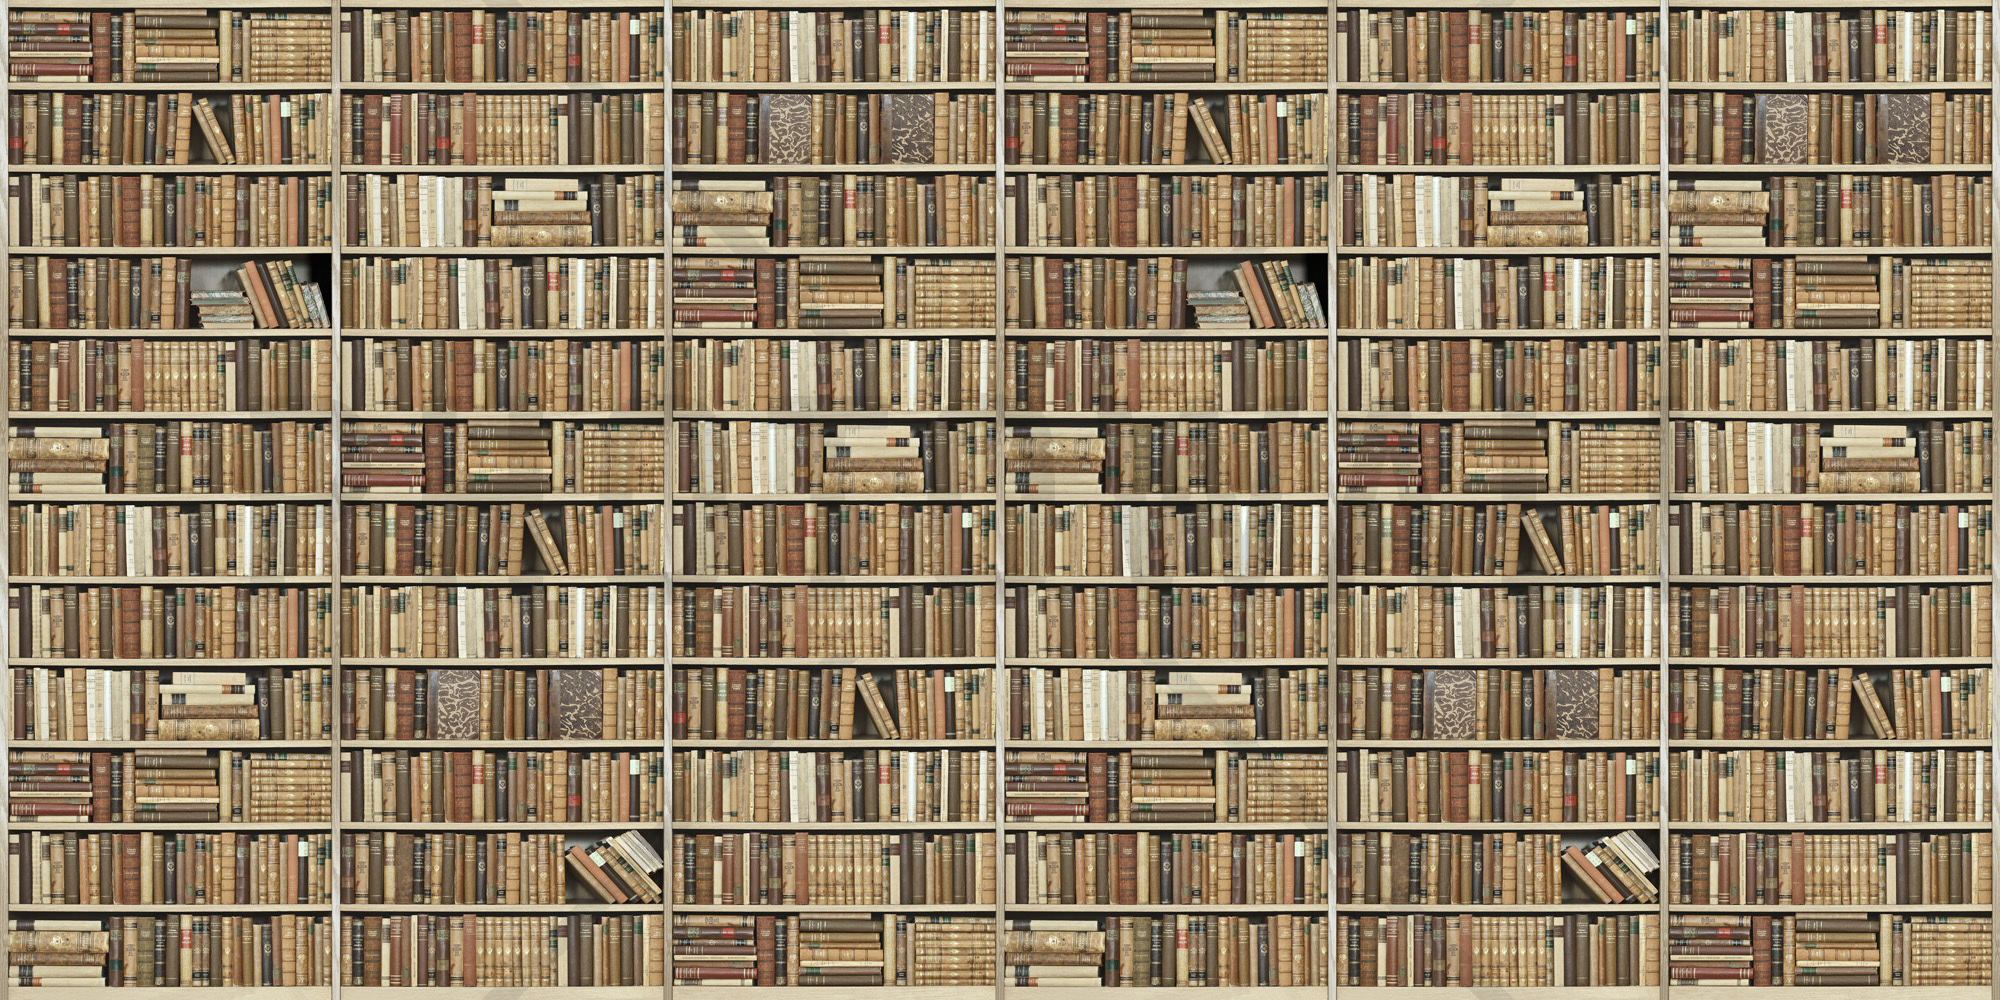 Bookshelf - Wooden - Long - Beige - Wall Mural & Photo Wallpaper ...